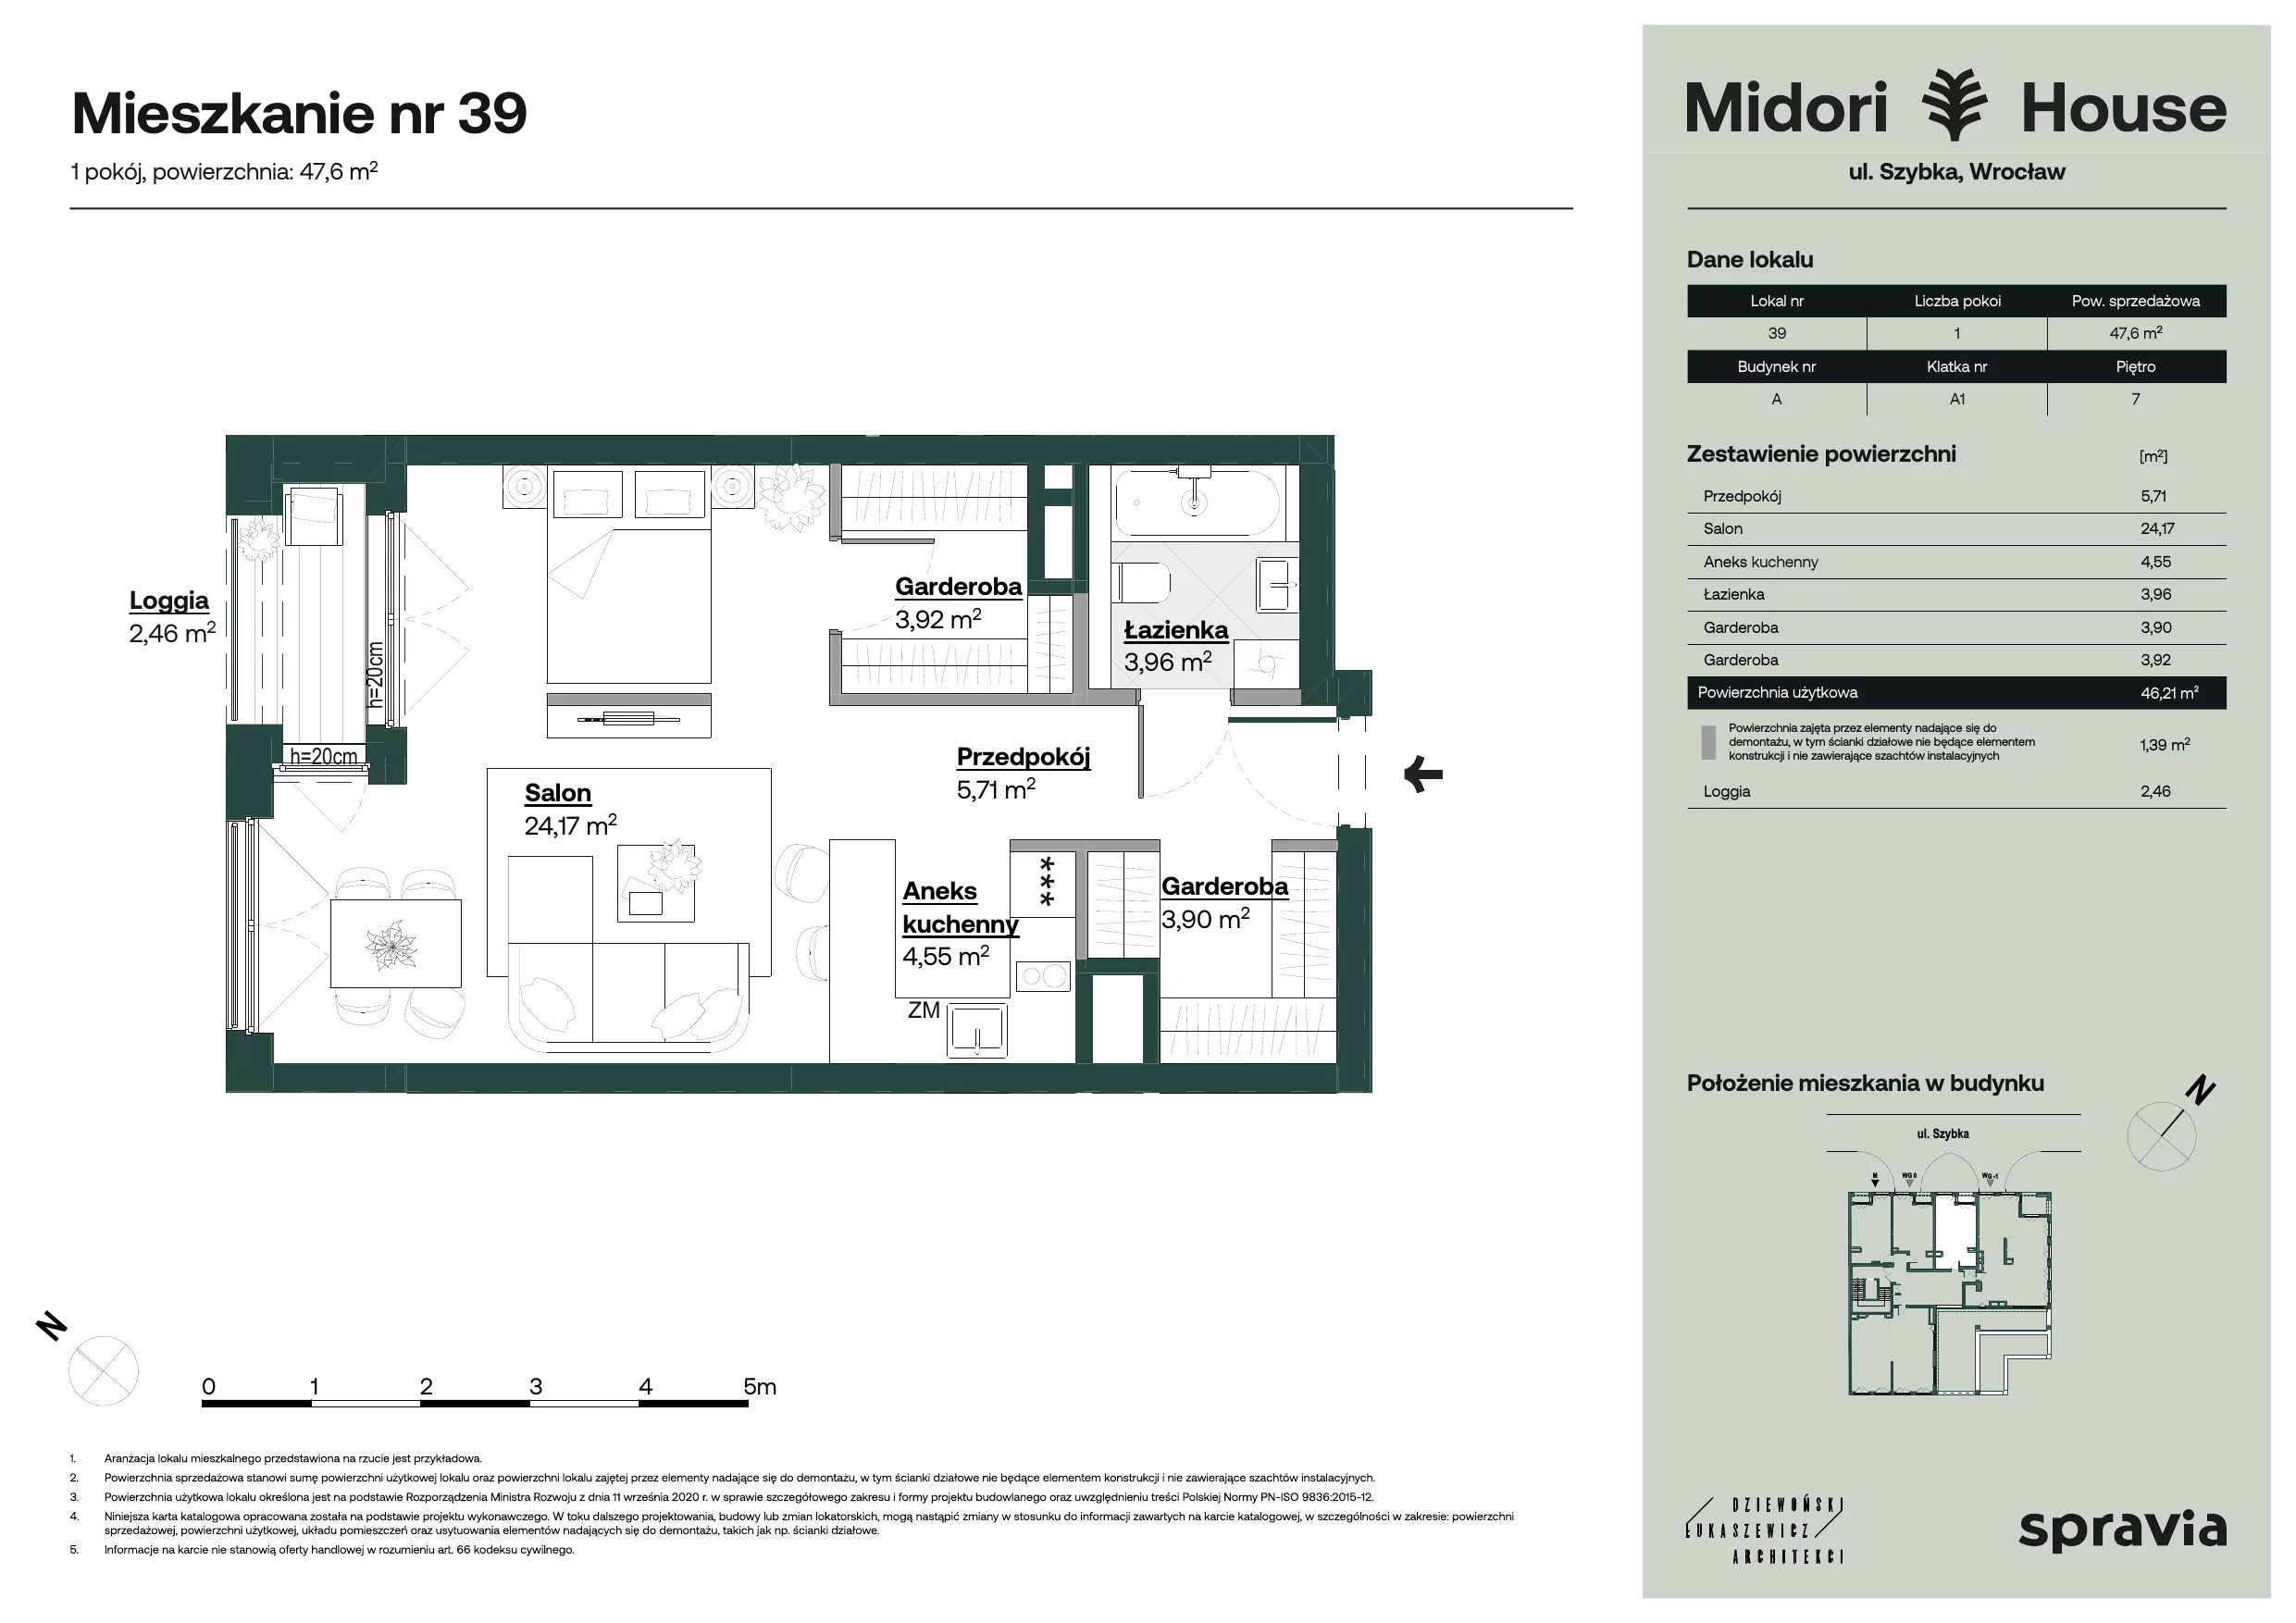 Mieszkanie 47,60 m², piętro 7, oferta nr 39, Midori House, Wrocław, Przedmieście Oławskie, ul. Szybka 9